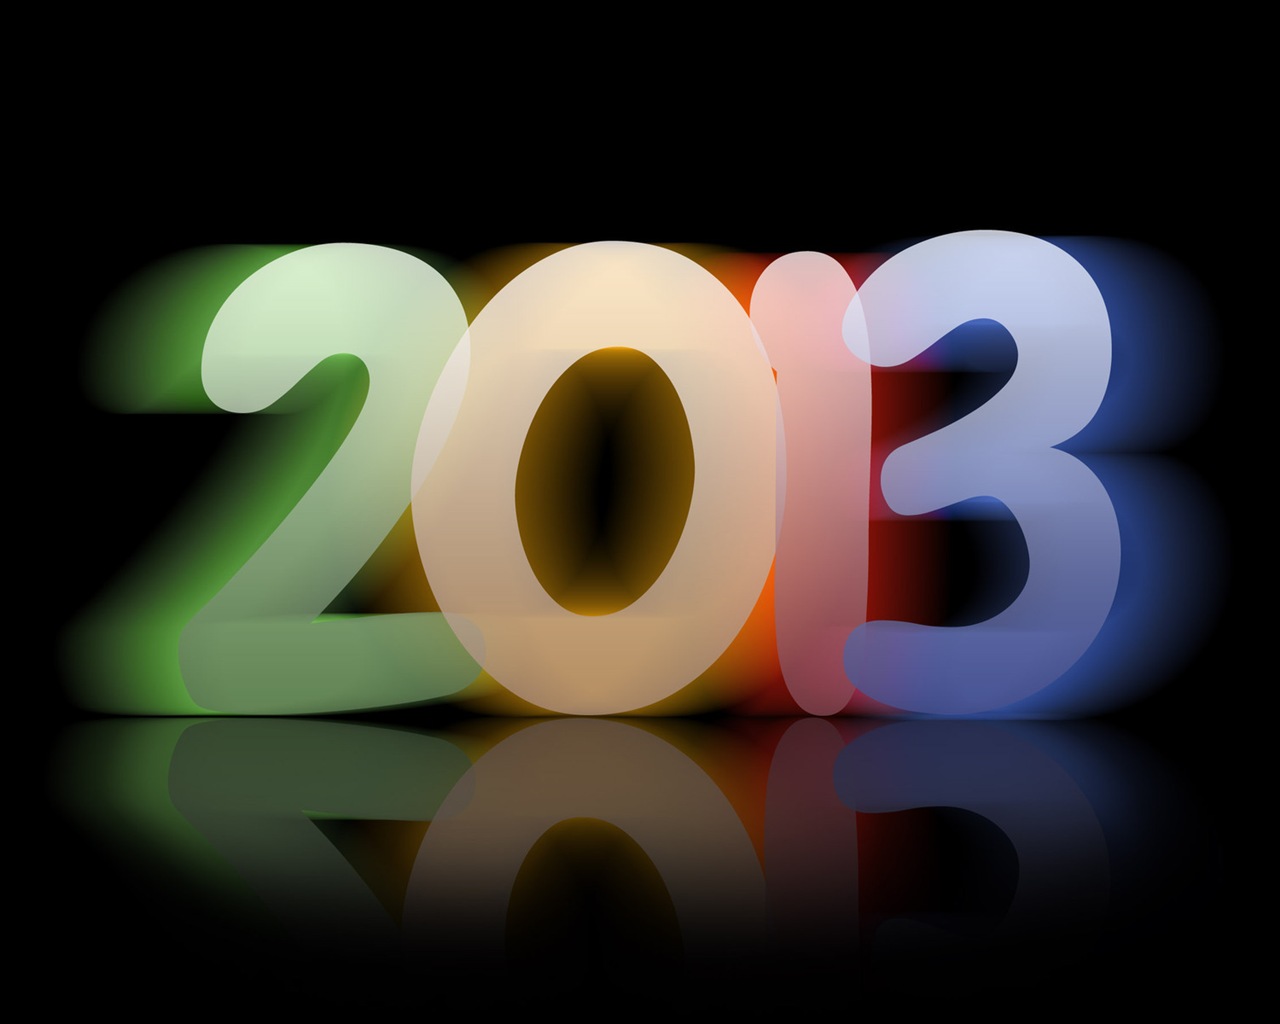 2013 Año Nuevo fondo de pantalla tema creativo (1) #8 - 1280x1024